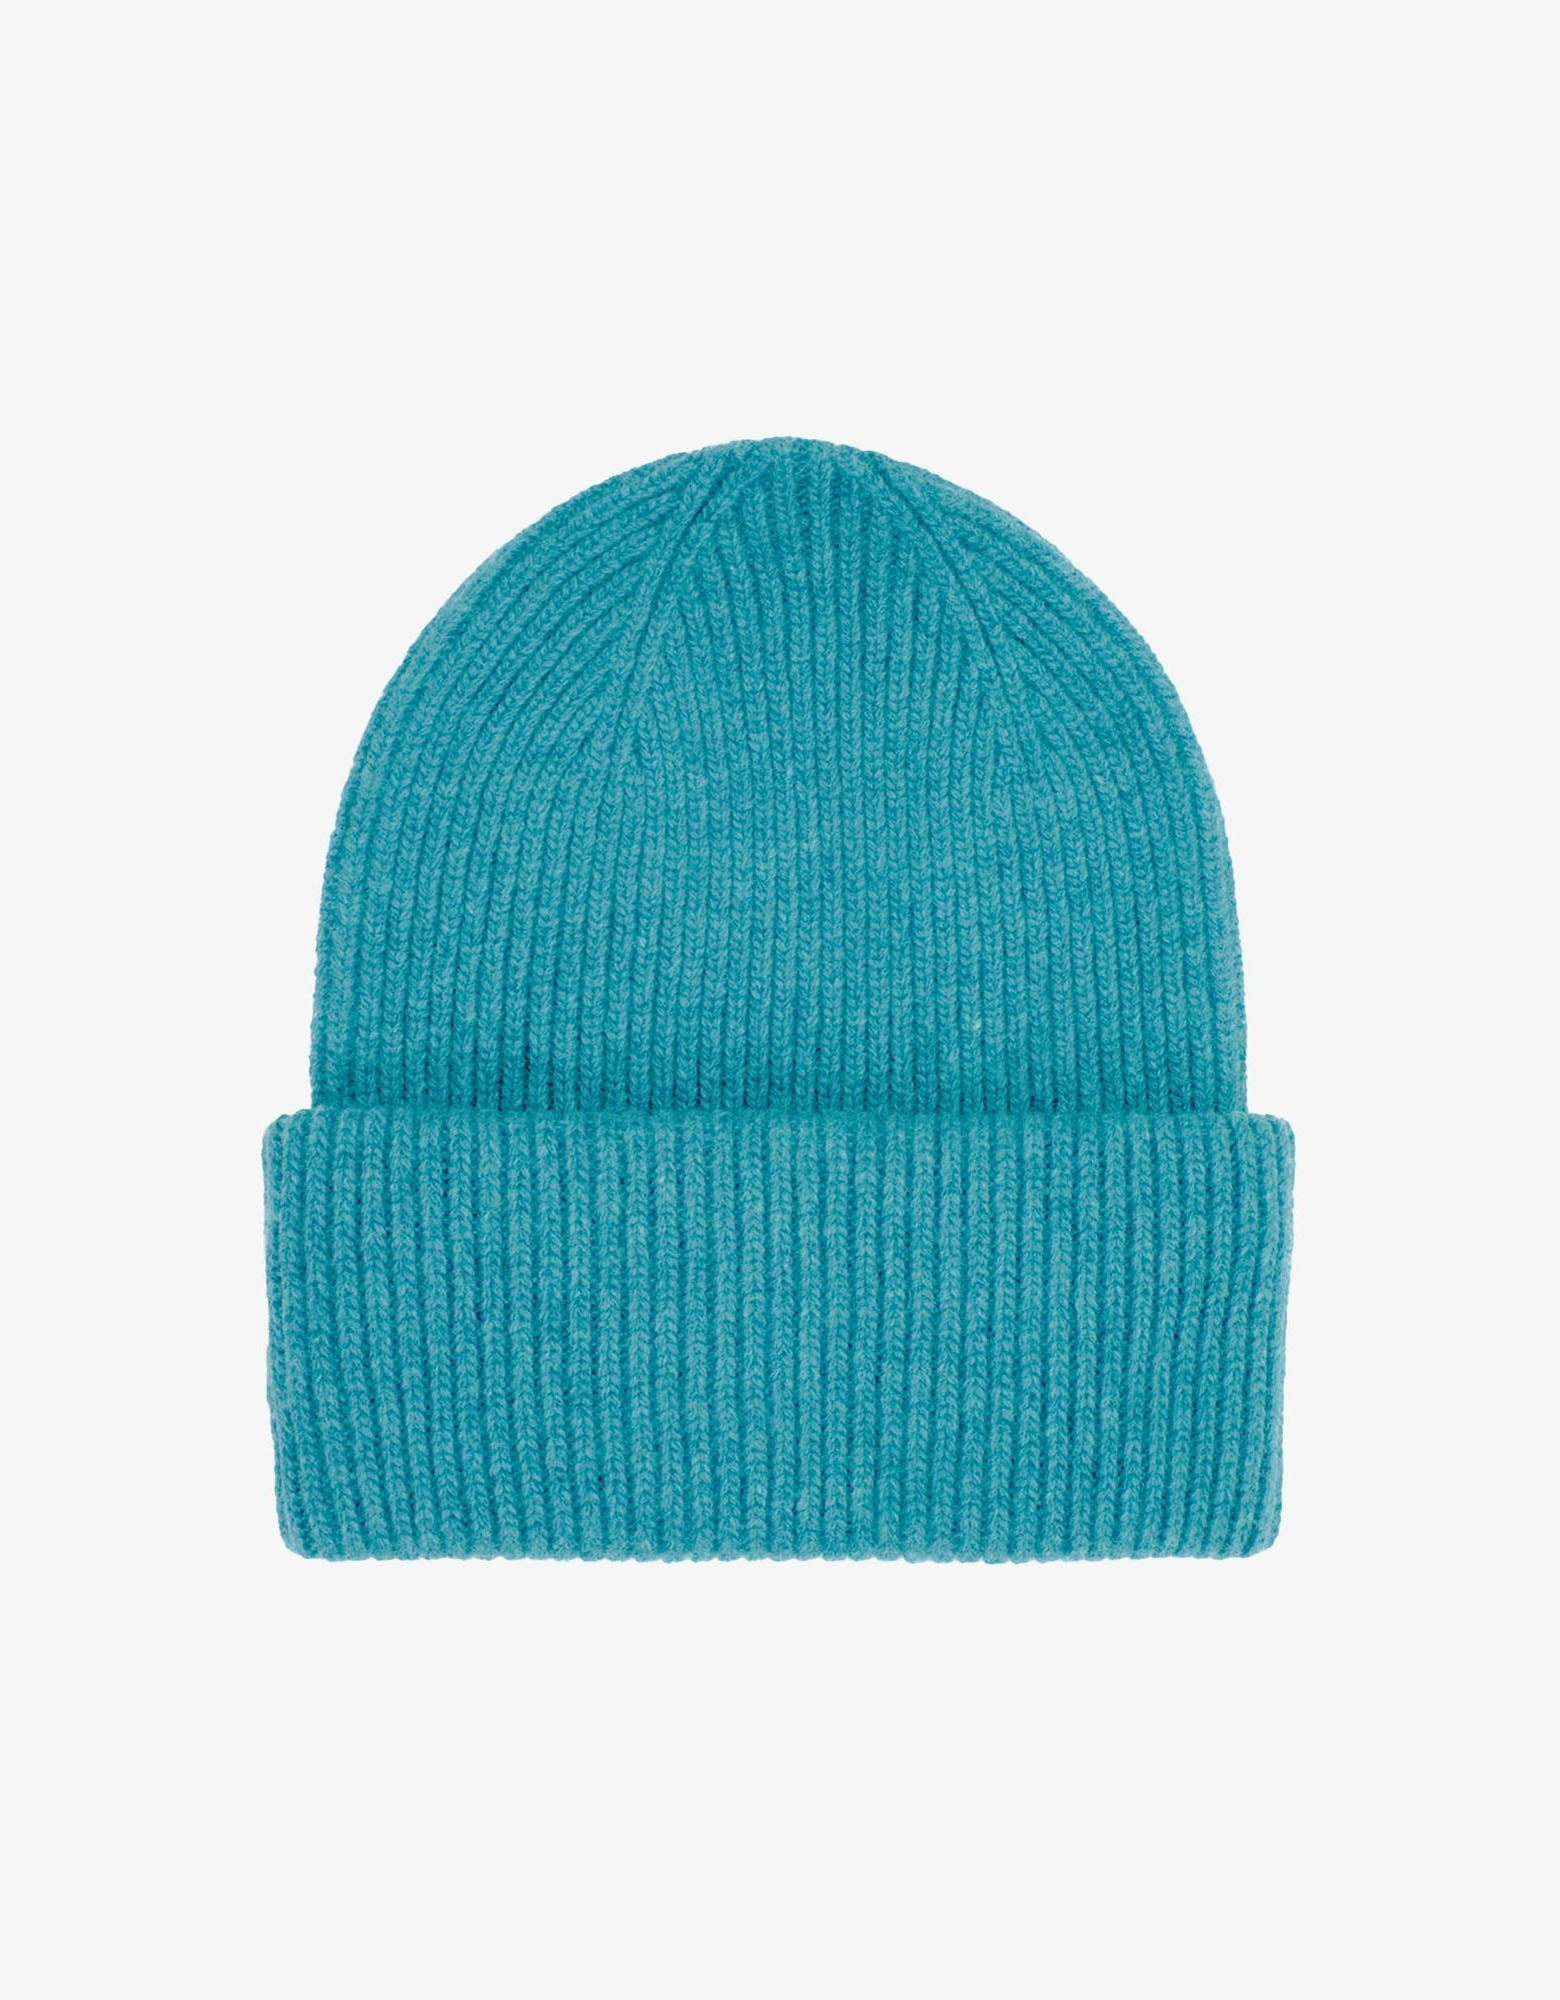 Merino Wool Hat - Teal Blue